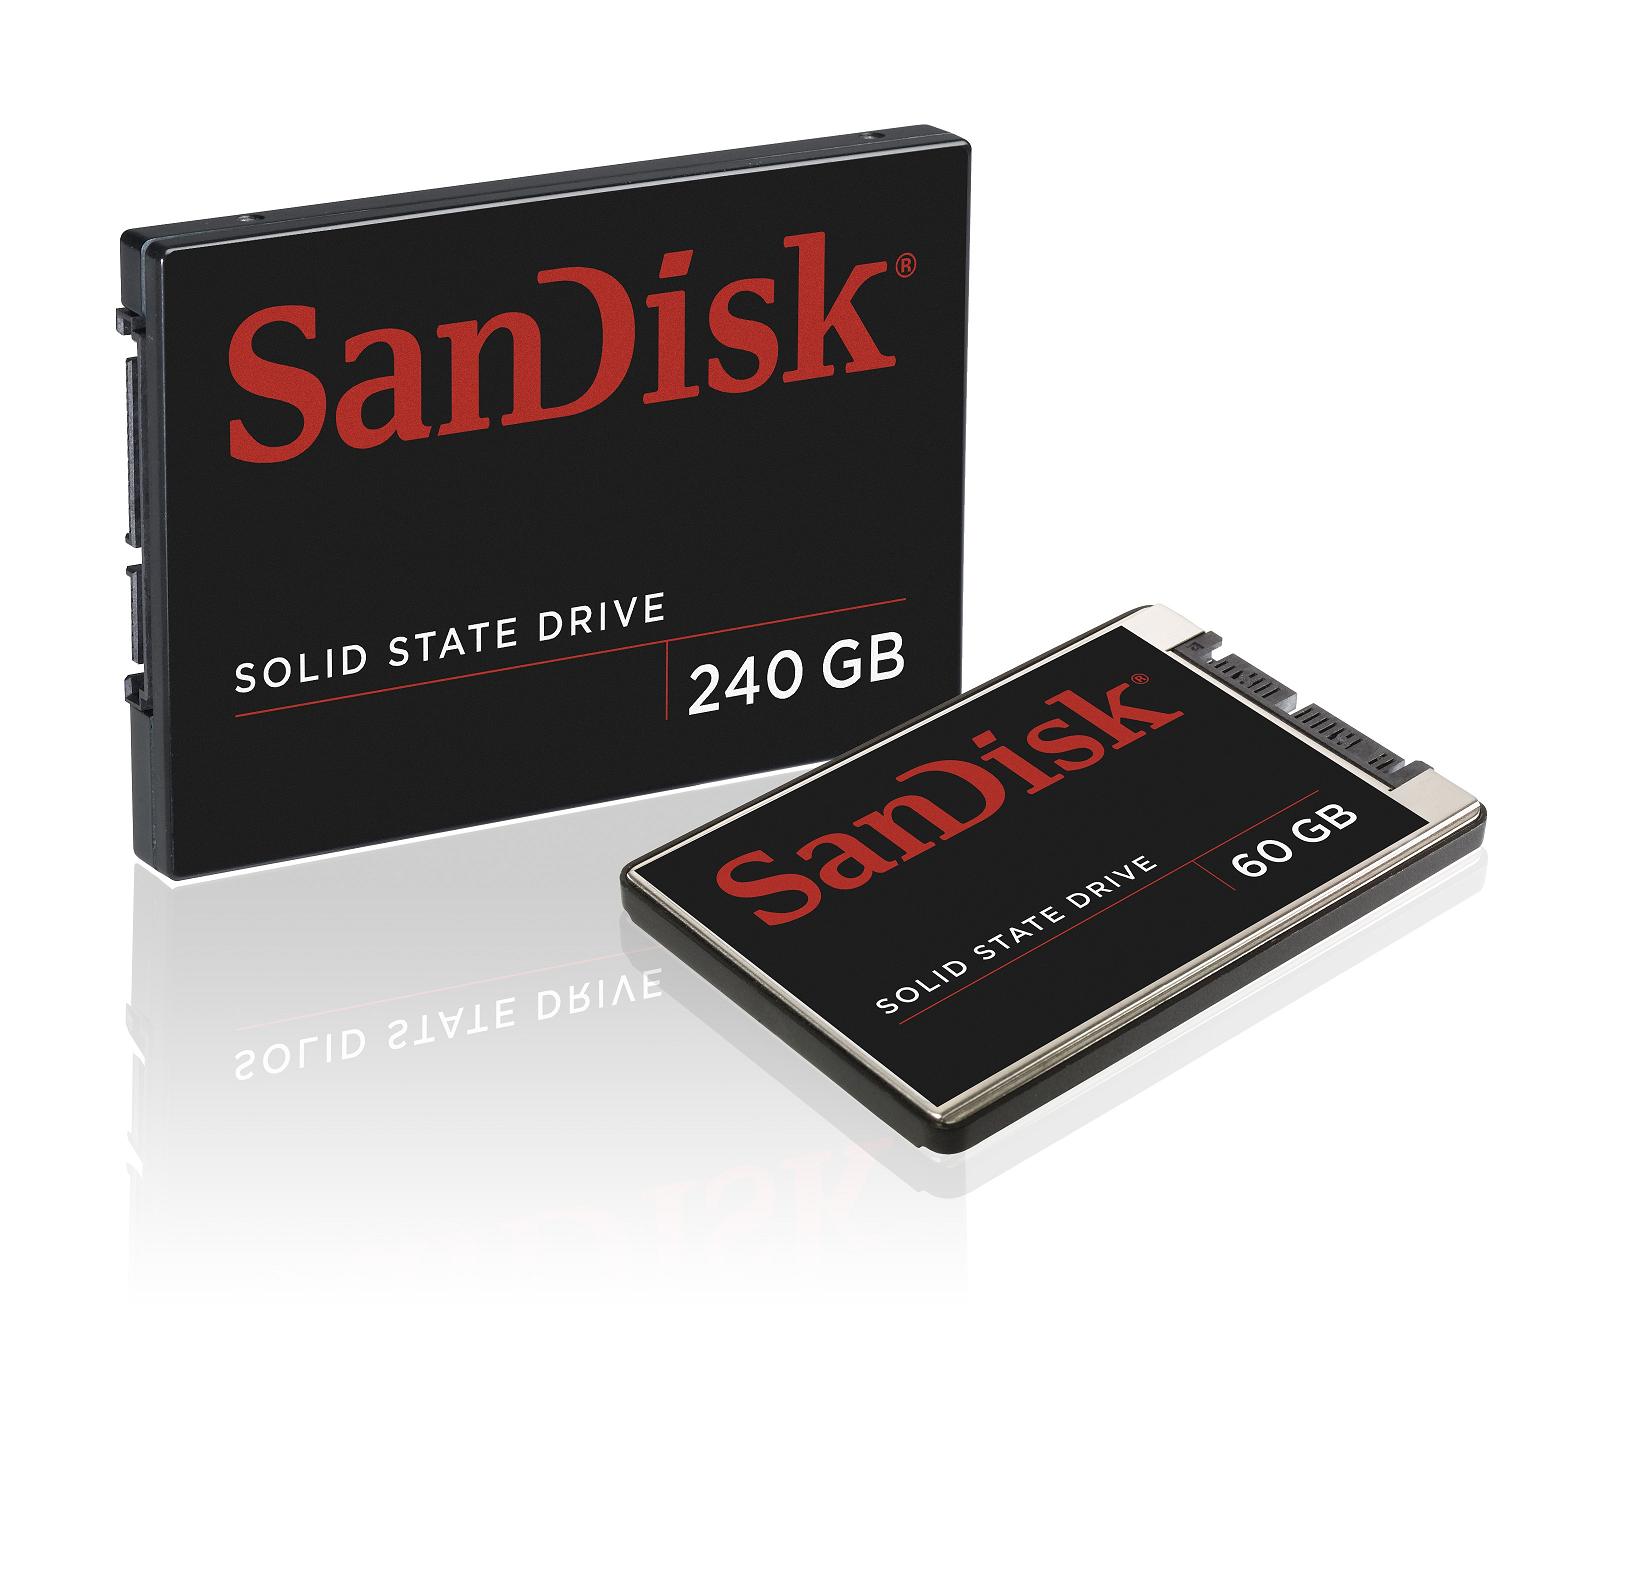 Ssd price. SANDISK. SANDISK SSD. SSD Drive. SANDISK Drive.